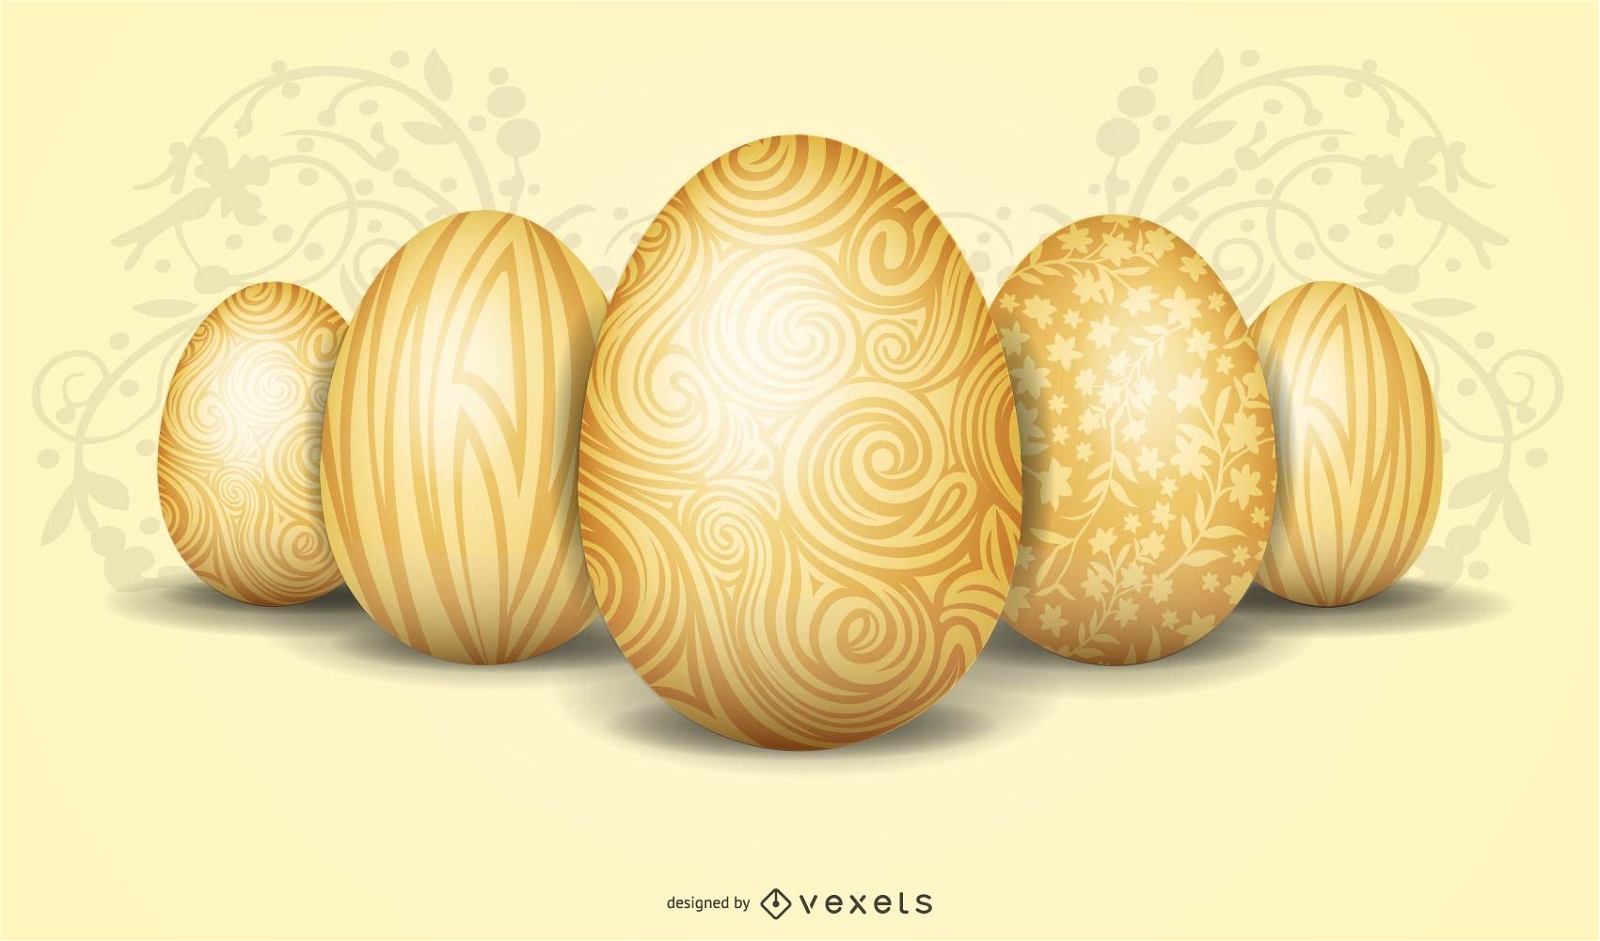 goldene Eier